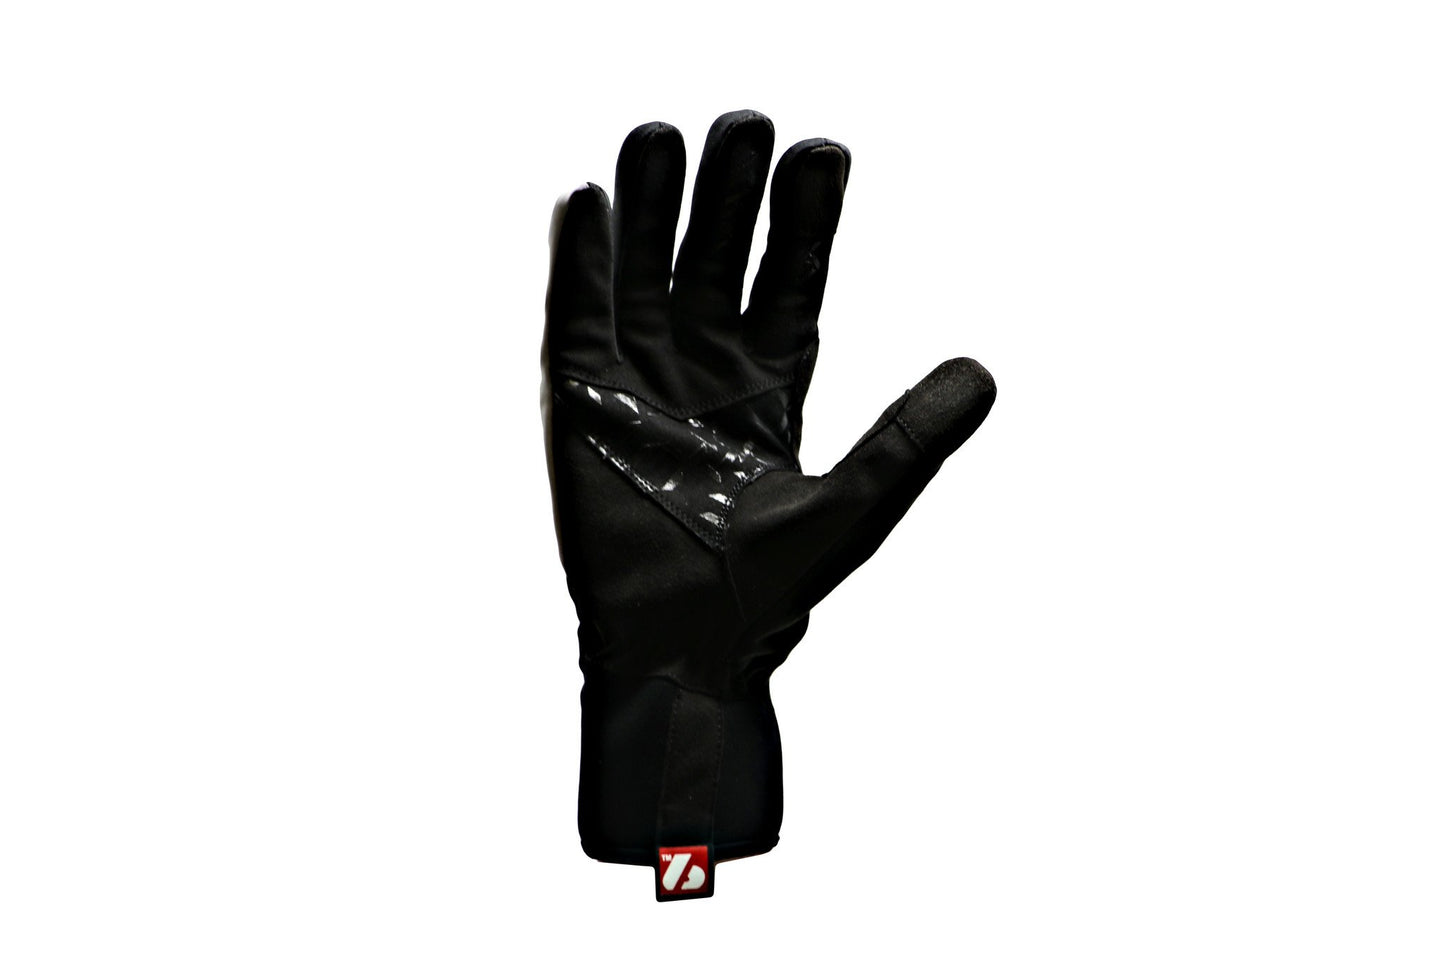 NBG-16 xc elite rukavice pro bežecké lyžování -20°C